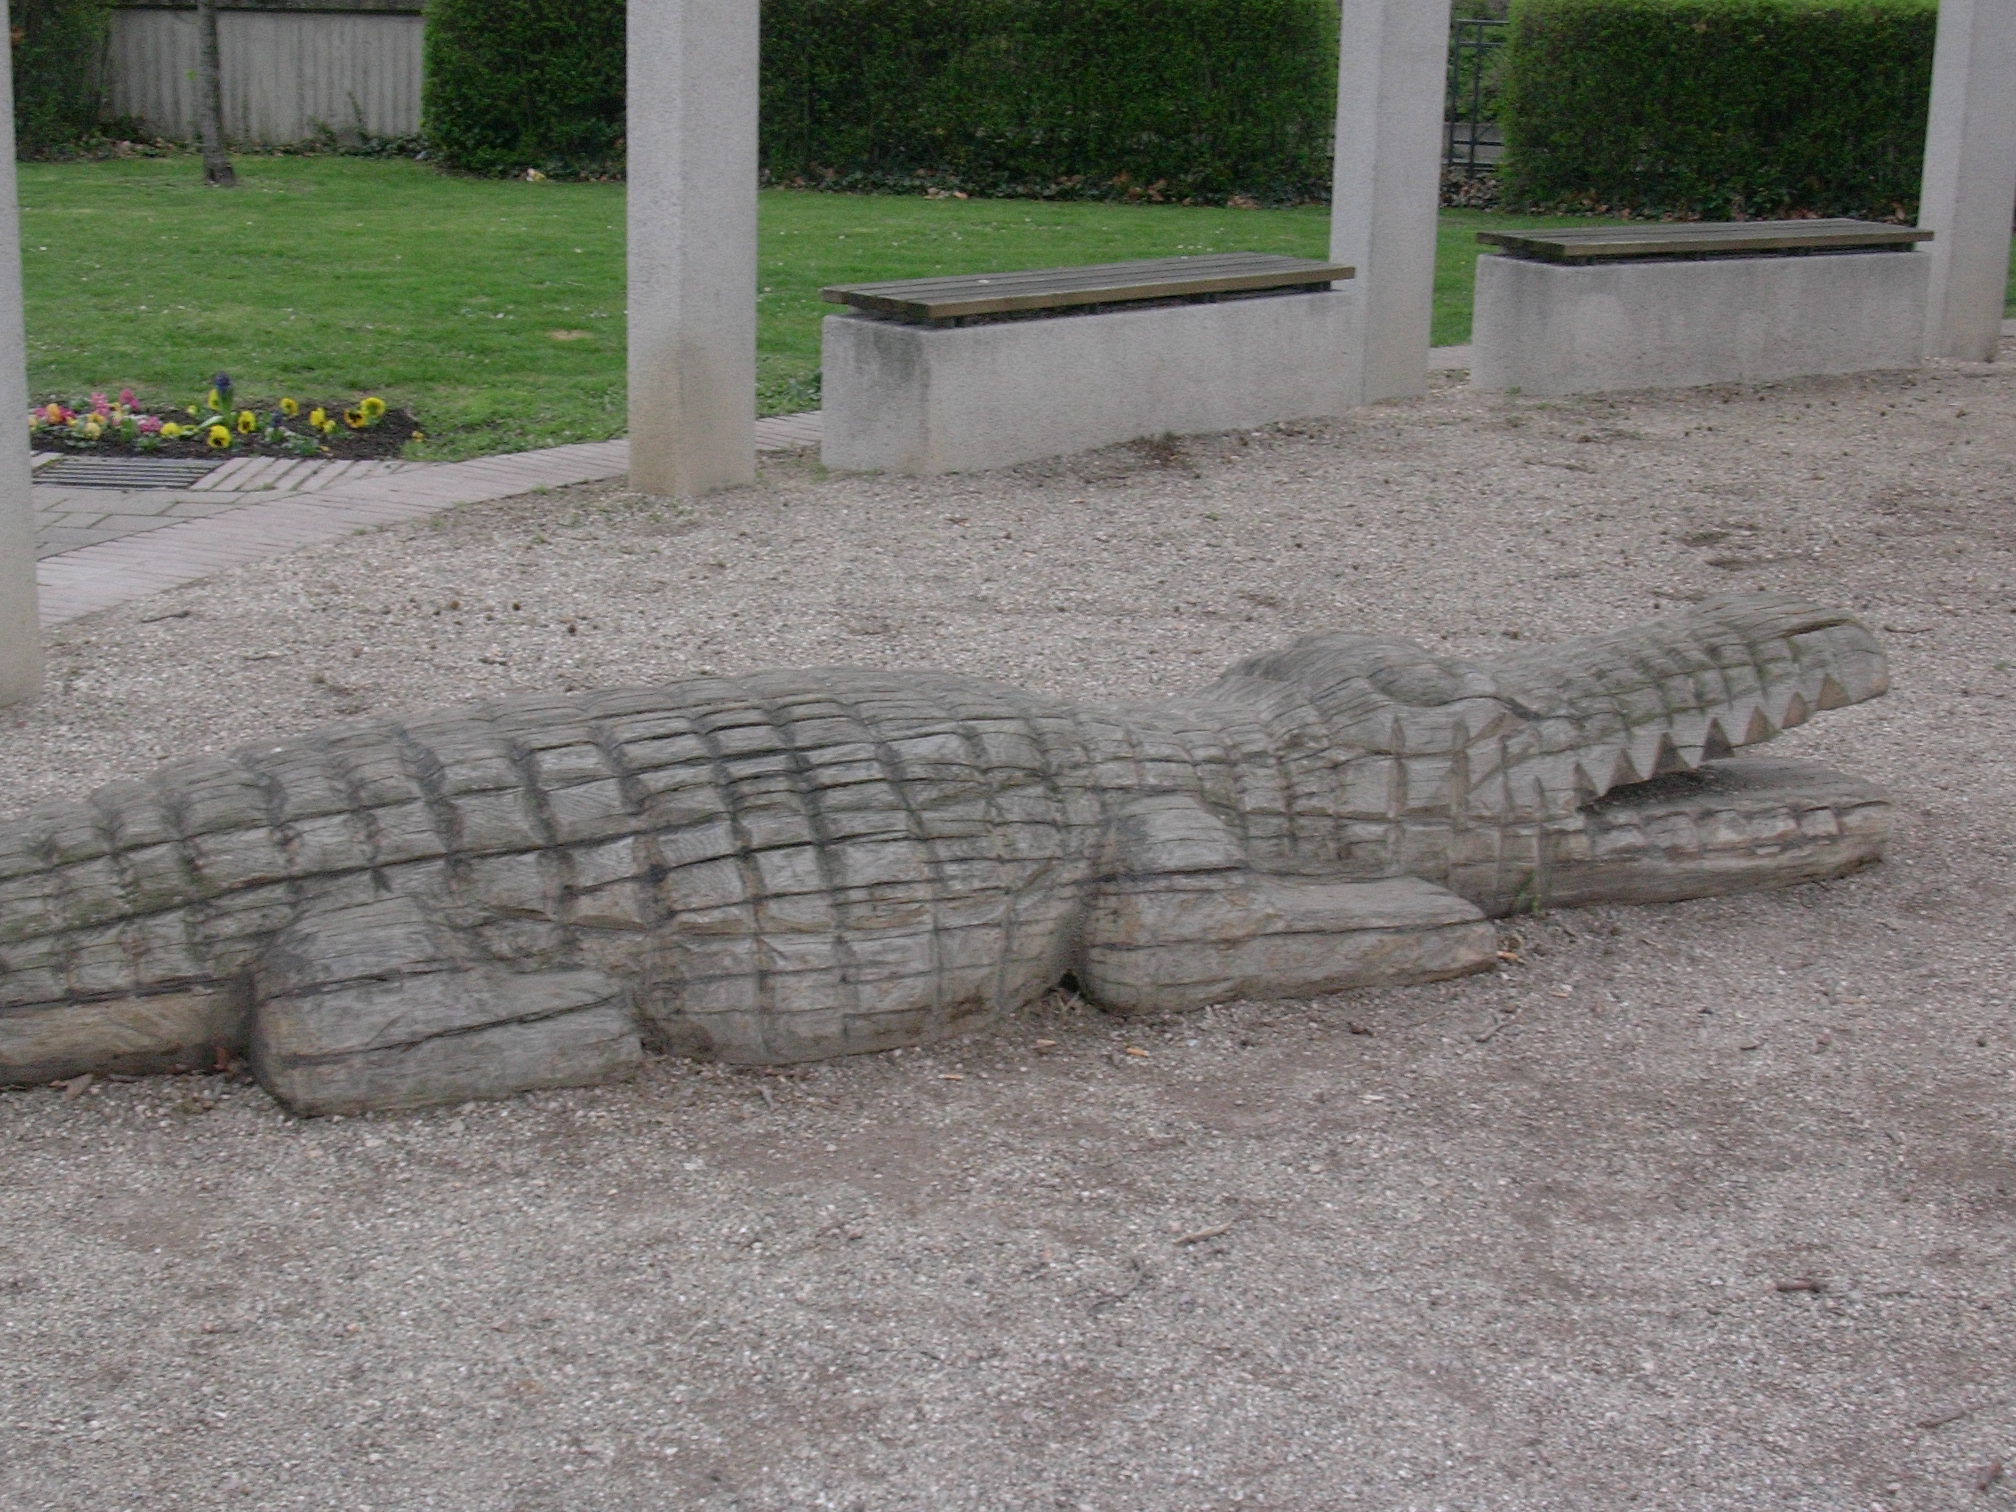 Datei:LU Ludwigsplatz Krokodil.jpg